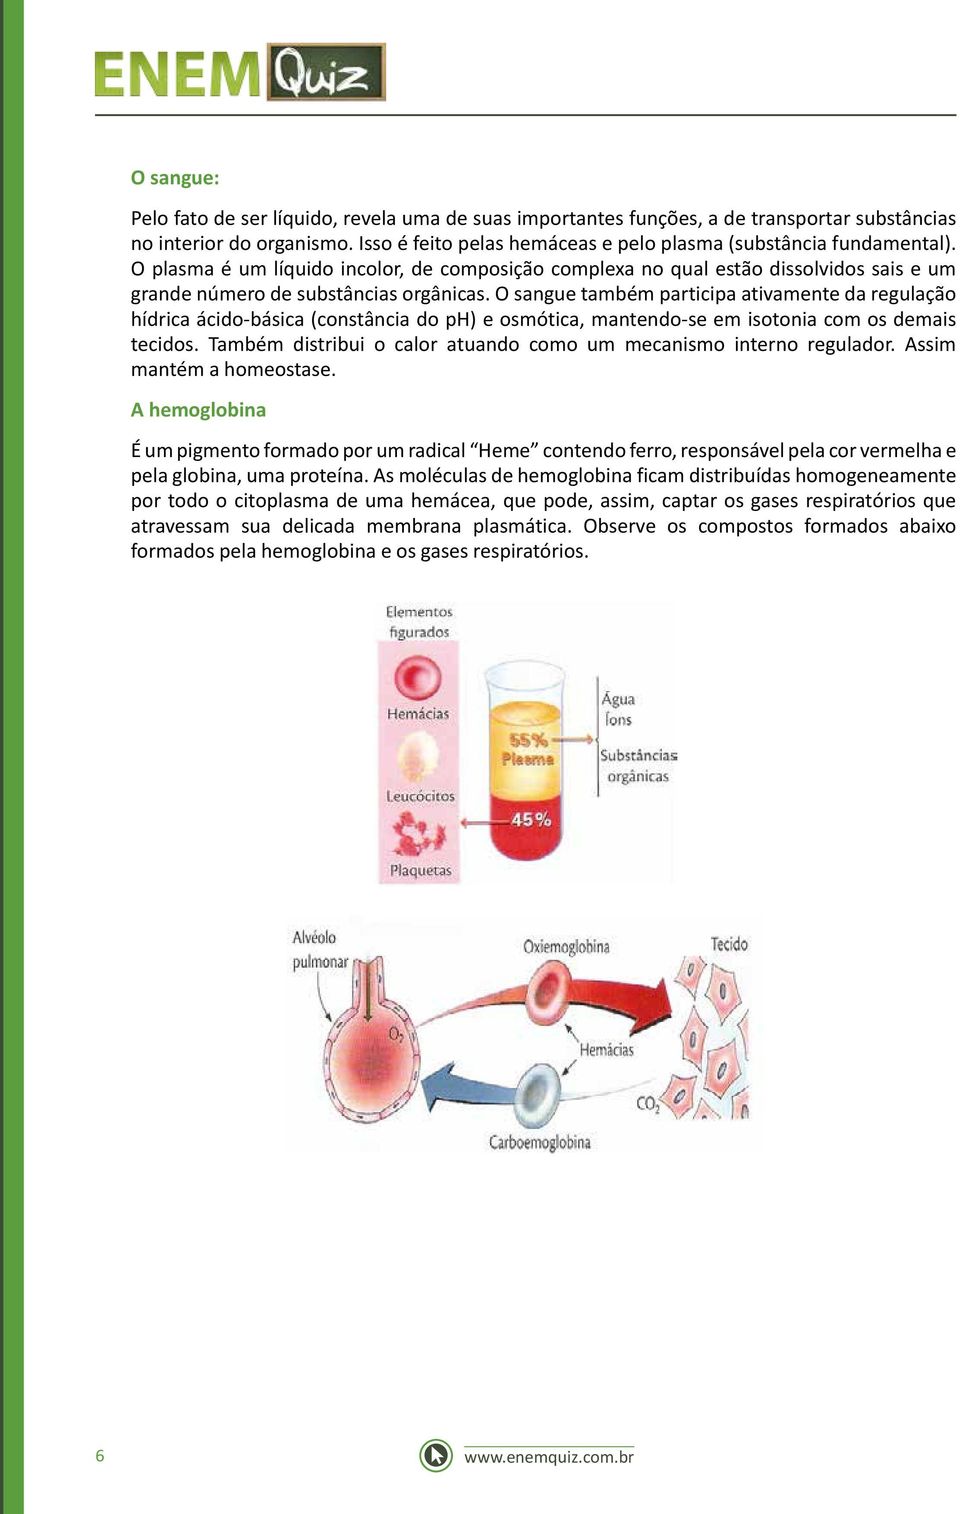 O sangue também participa ativamente da regulação hídrica ácido-básica (constância do ph) e osmótica, mantendo-se em isotonia com os demais tecidos.